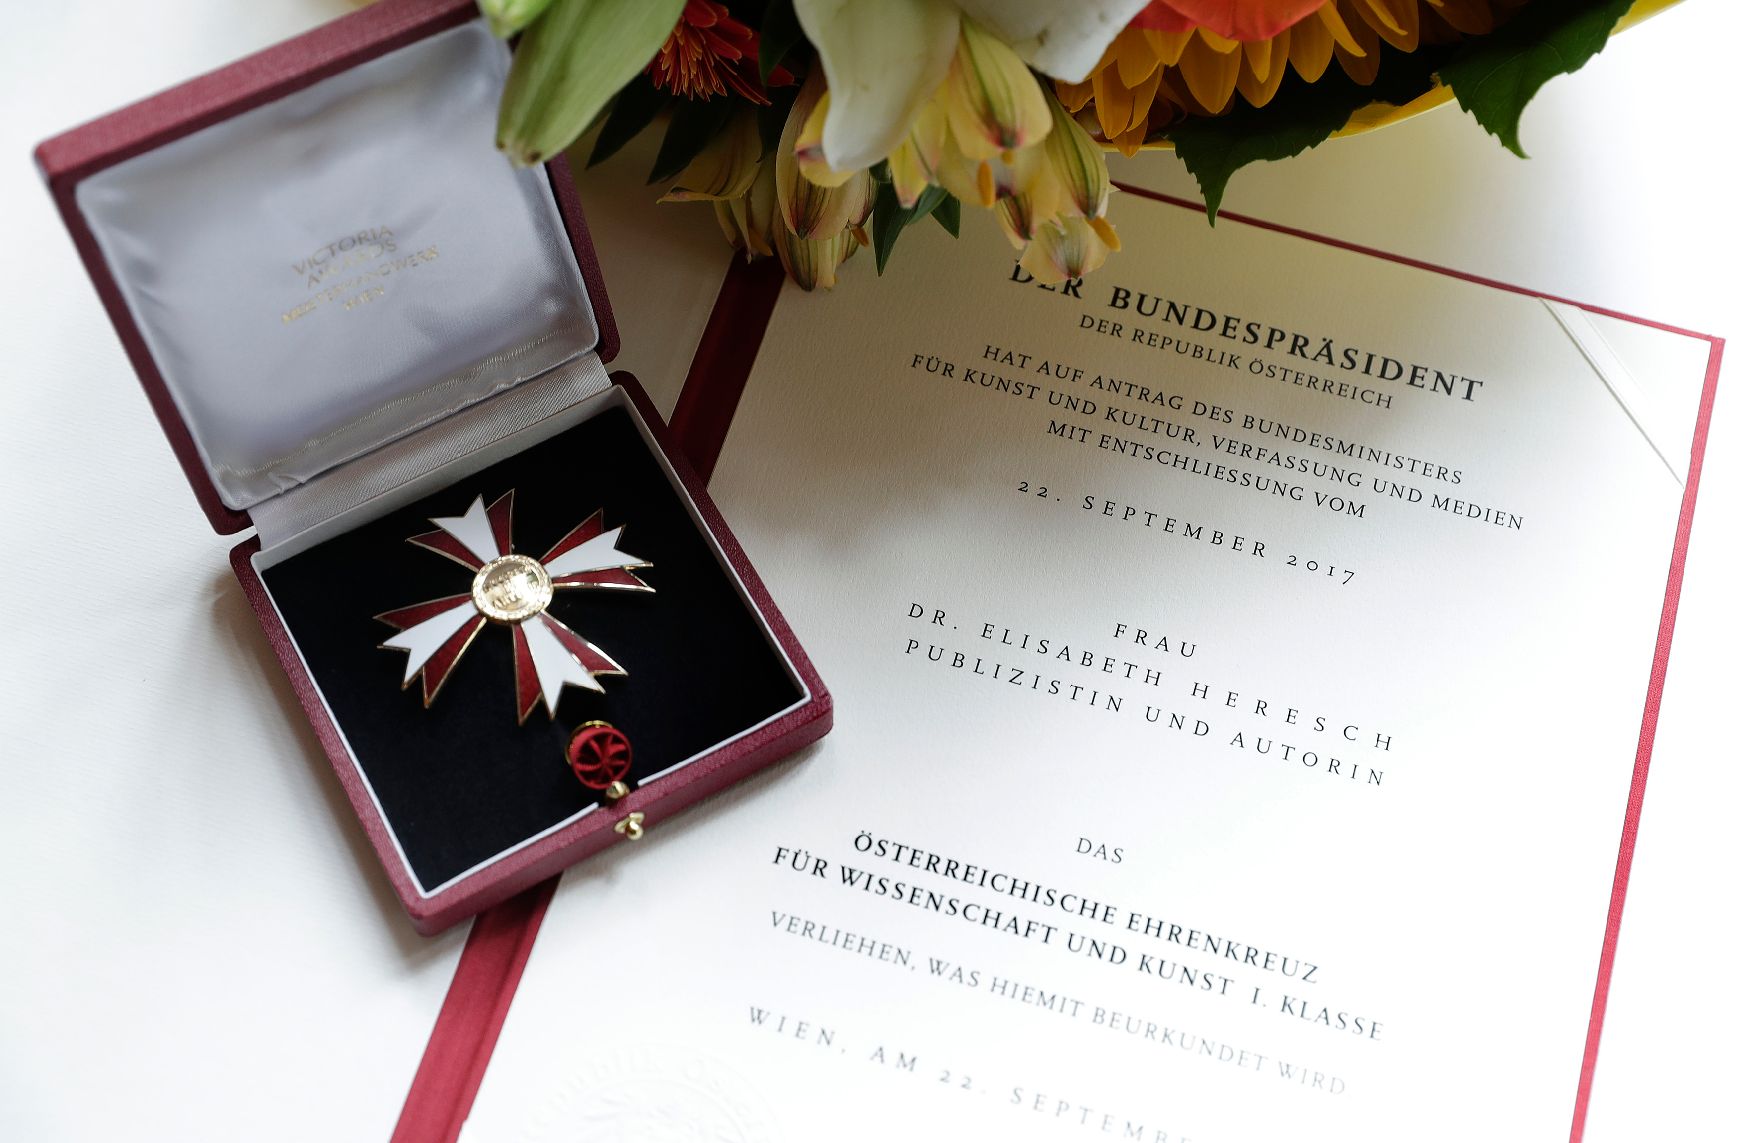 Am 27. Juni 2018 wurden die Urkunde über die Verleihung des Berufstitels Professor an Andreas Gaiser und das Österreichische Ehrenkreuz für Wissenschaft und Kunst I. Klasse an Elisabeth Heresch überreicht.